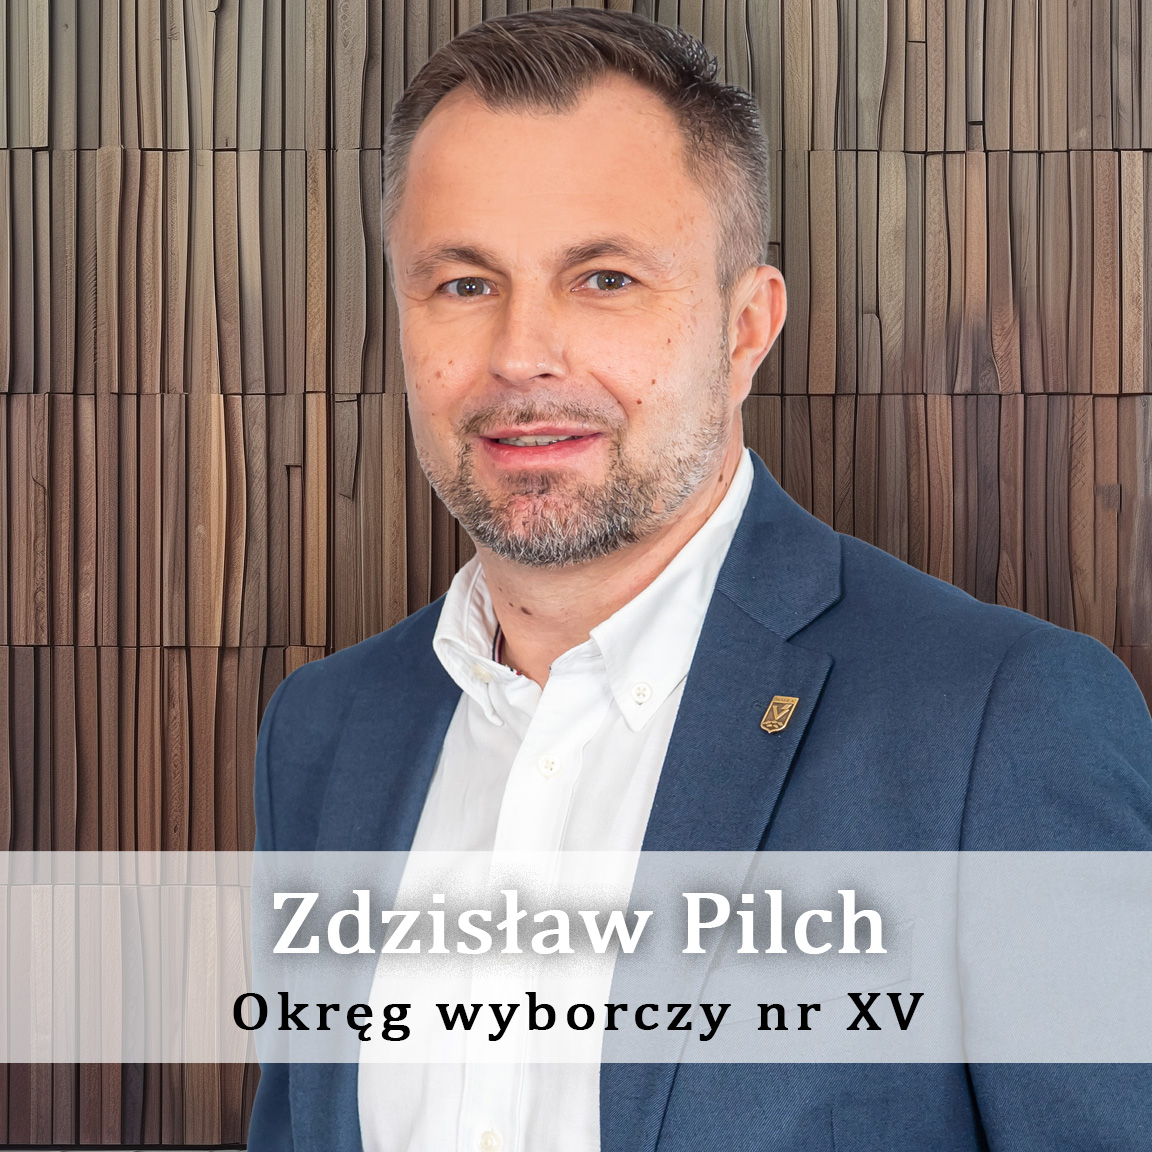 Zdzisław_Pilch_-Okręg-wyporczy-nr-15-Radny-Miasto-Wisła